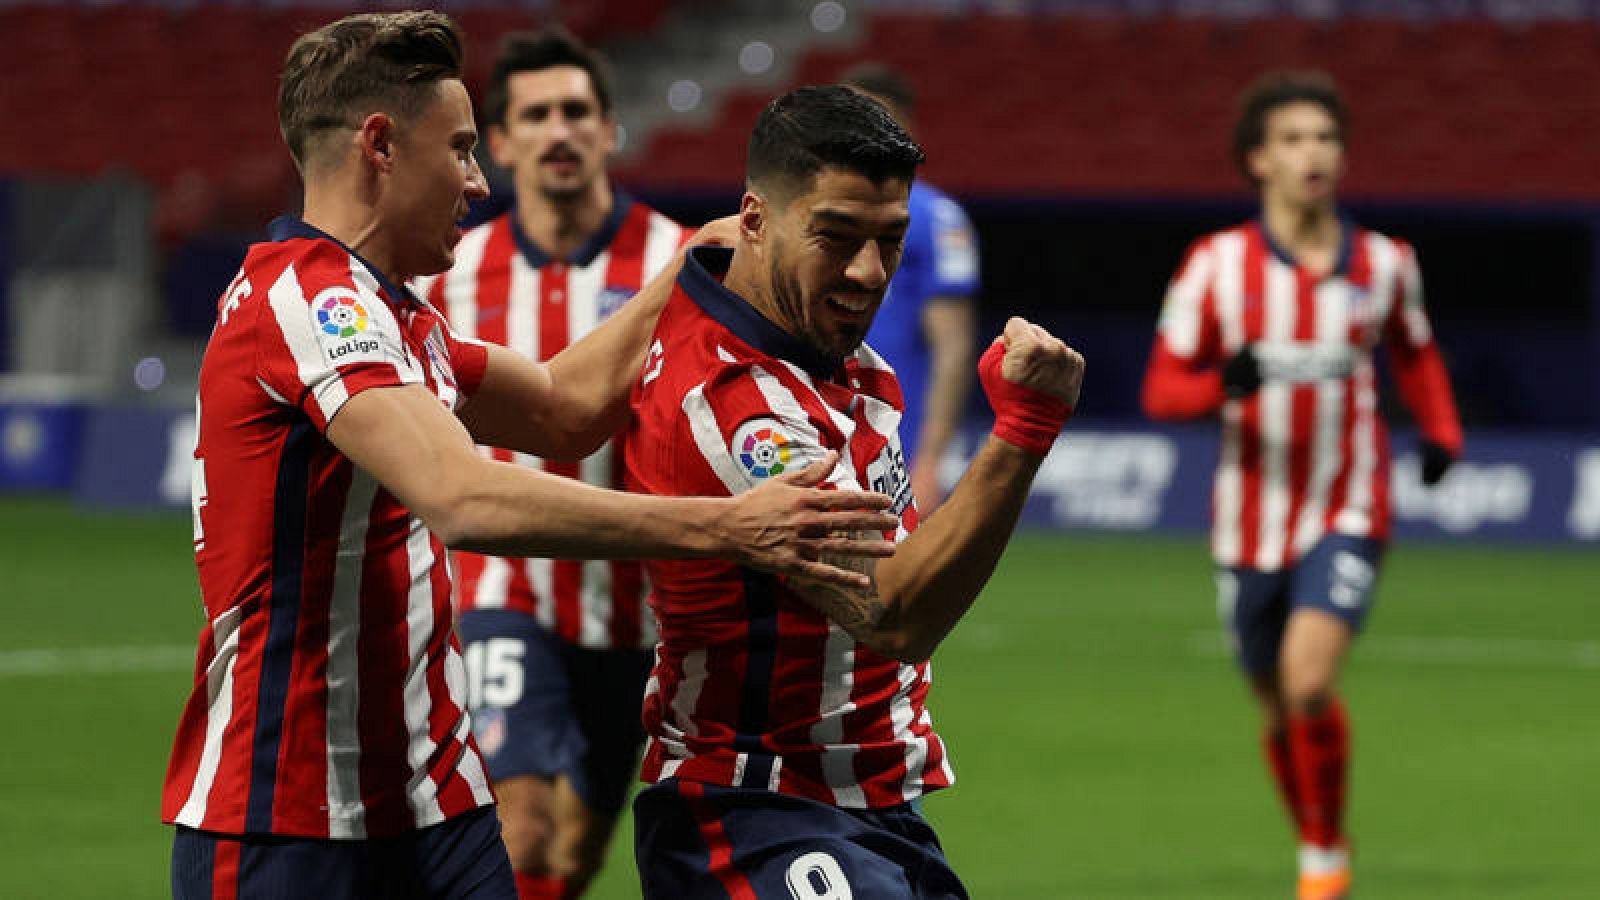 El Atlético despide el año con victoria y liderato en solitario tras el empate del Real Madrid en el Matínez Valero.